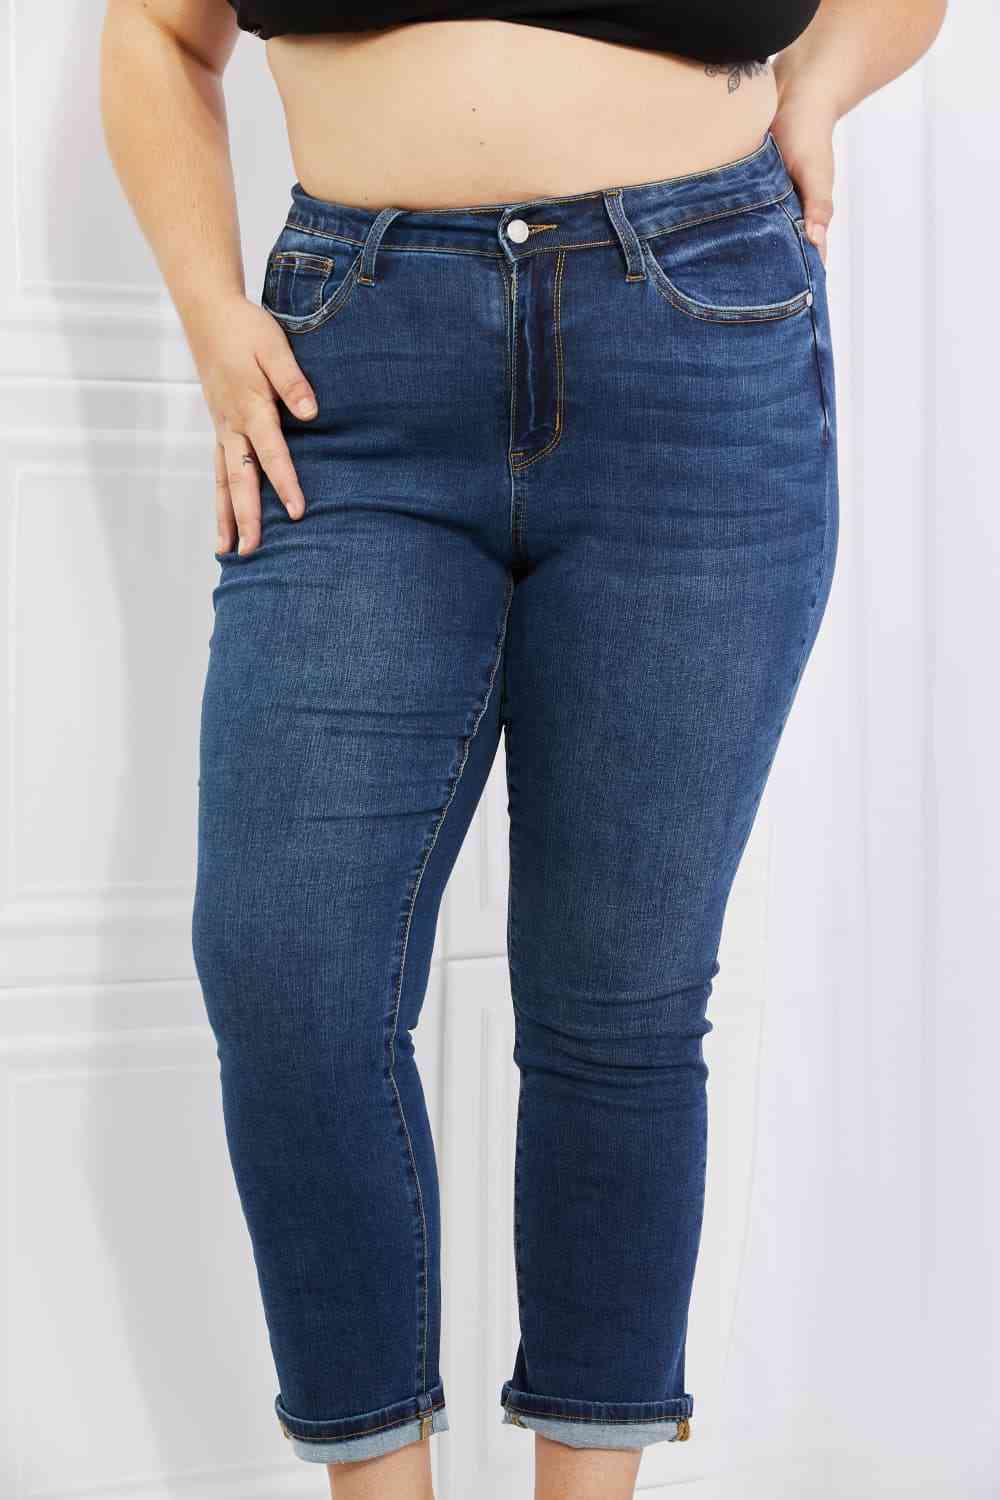 Judy Blue Crystal Full Size High Waisted Cuffed Boyfriend Jeans - Lab Fashion, Home & Health